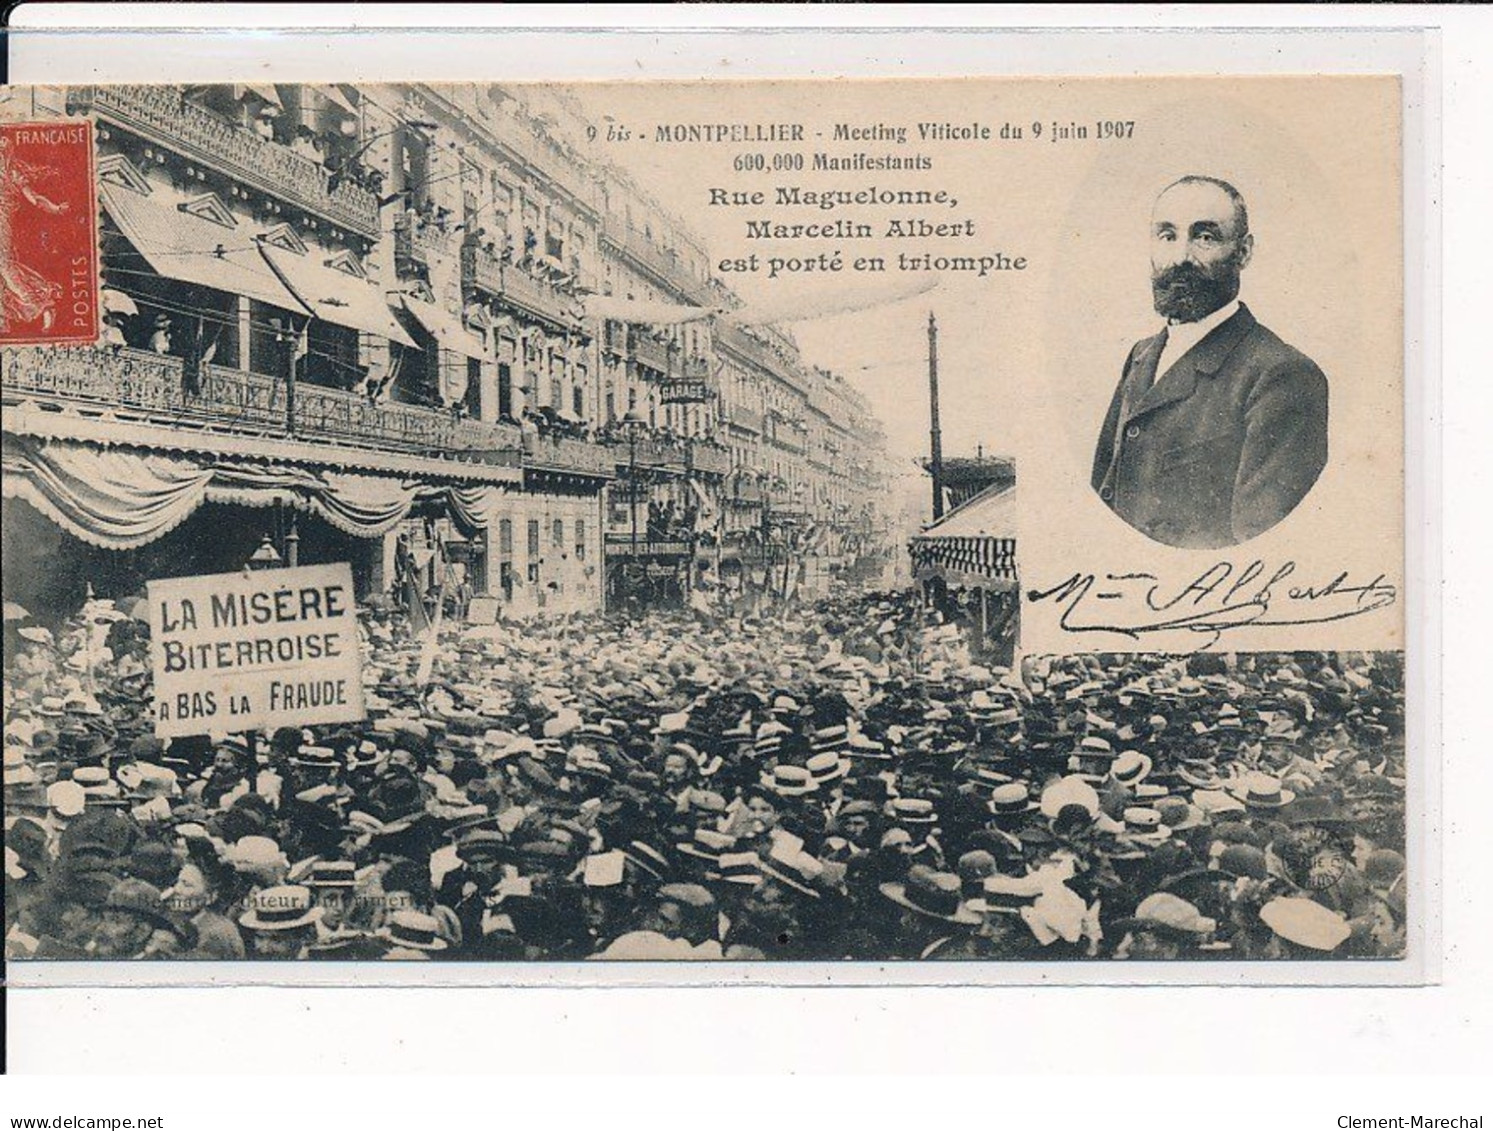 MONTPELLIER : Meeting Viticole Du 9 Juin 1907, Rue Maguelonne, Marcelin Albert Est Porté En Triomphe - Très Bon état - Montpellier